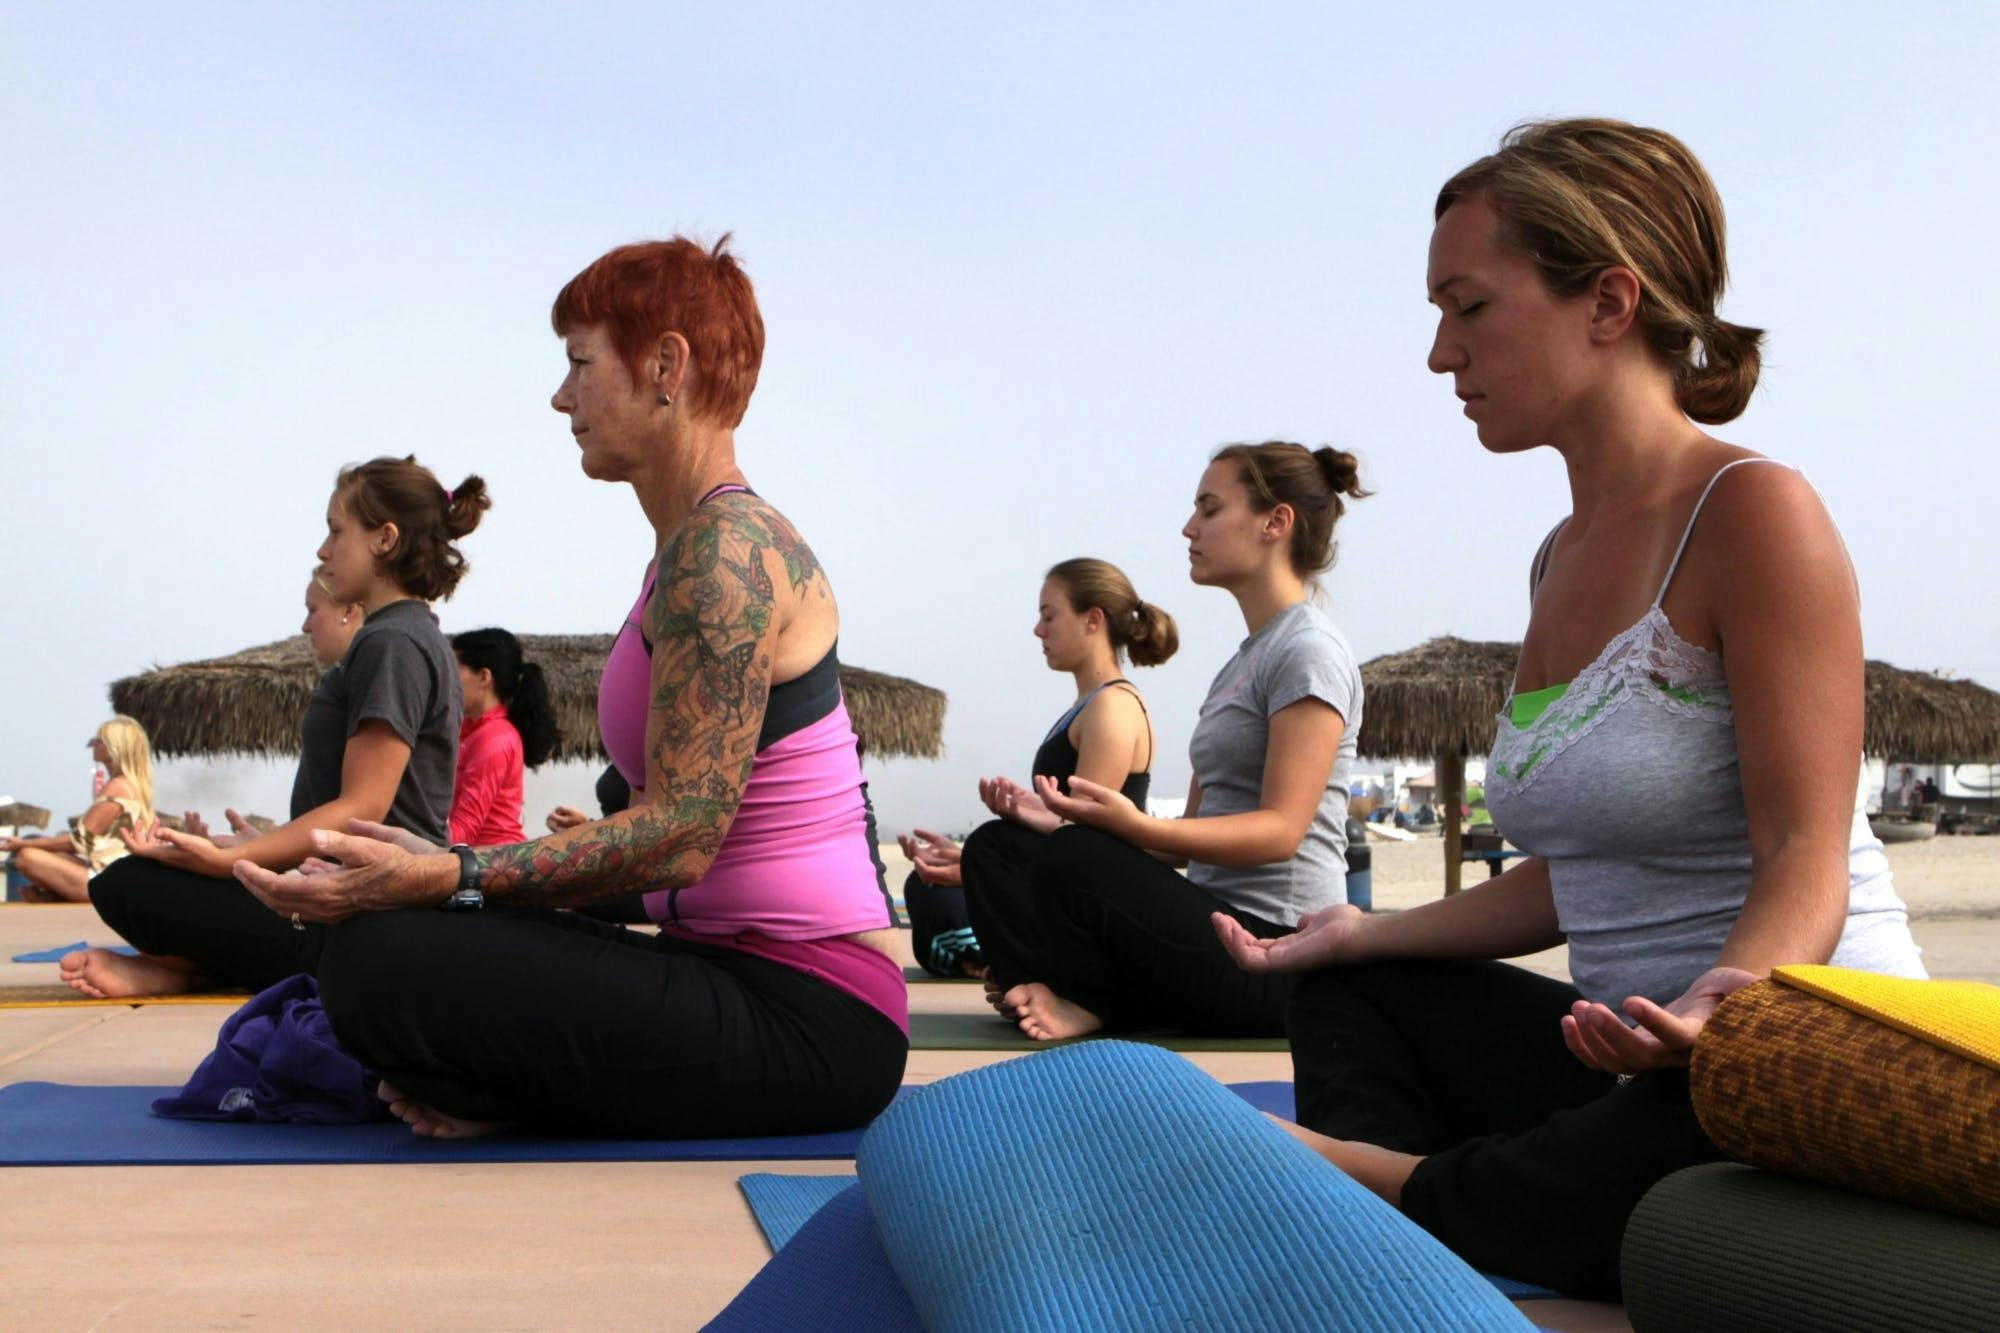 Cours de yoga en petit groupe au bord de la mer à Ortigia